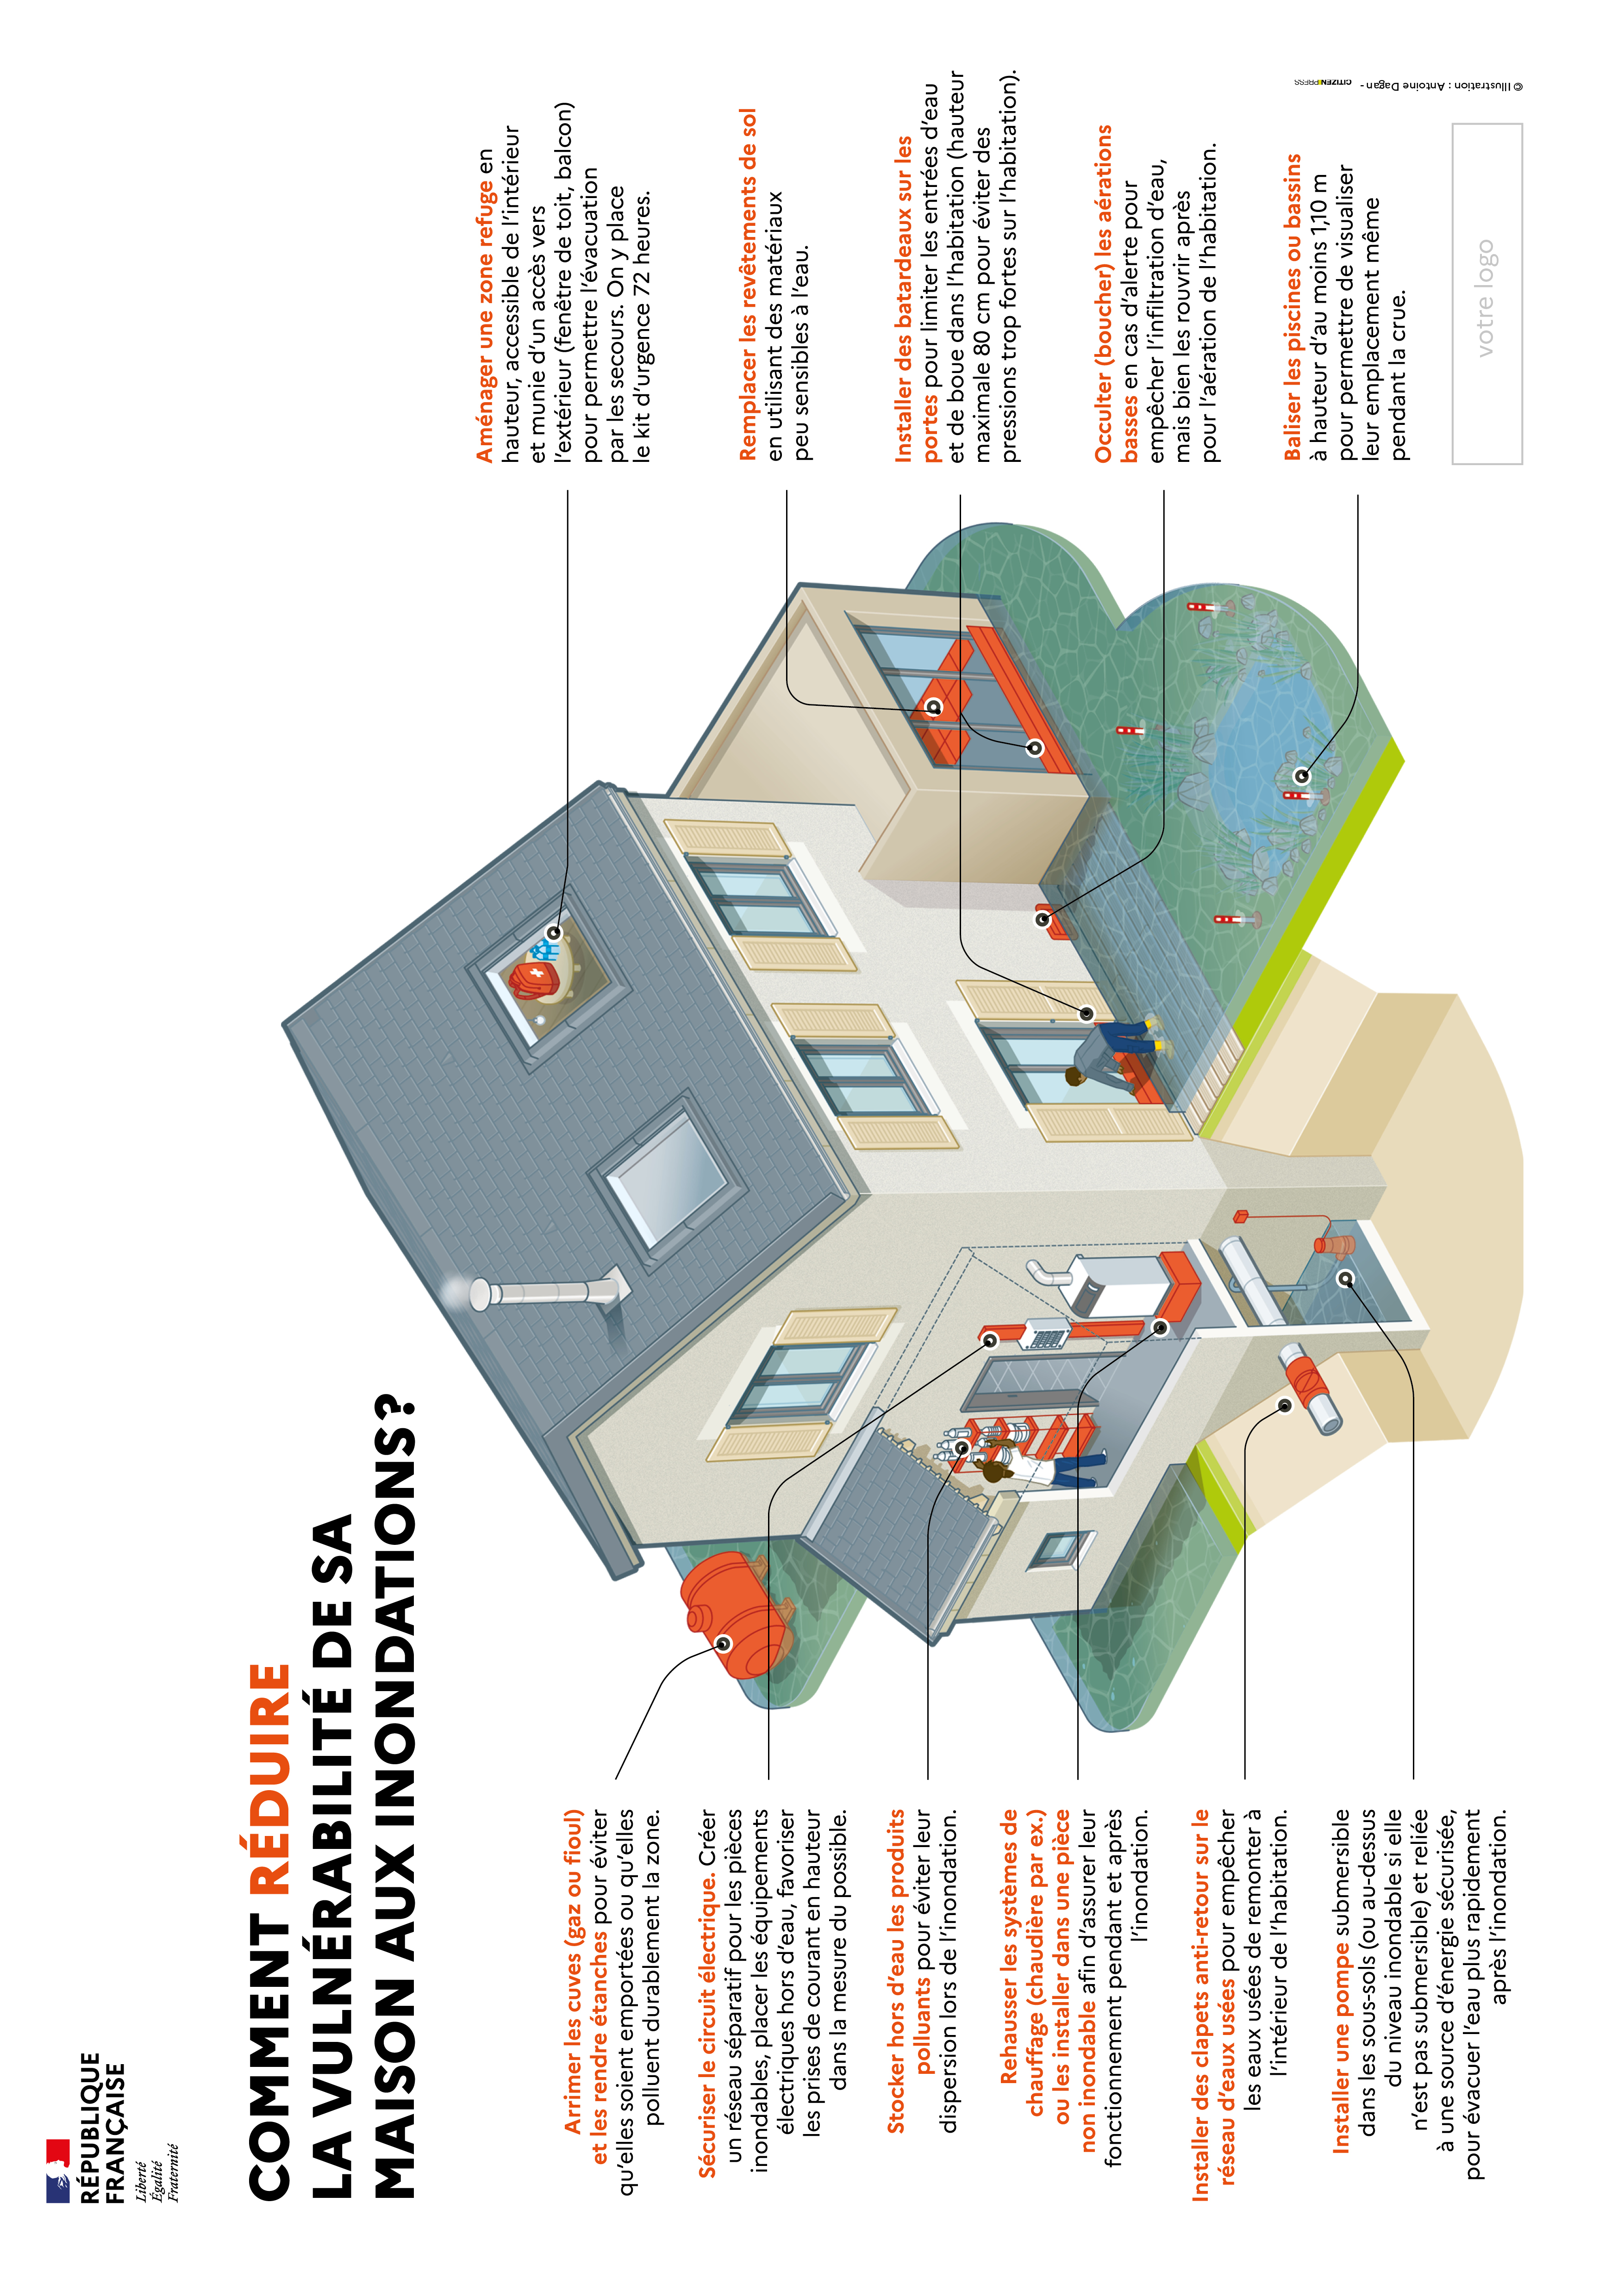 Aperçu de l’infographie « Réduire la vulnérabilité de ma maison aux inondations », qui représente tous les travaux listés ci-dessus.